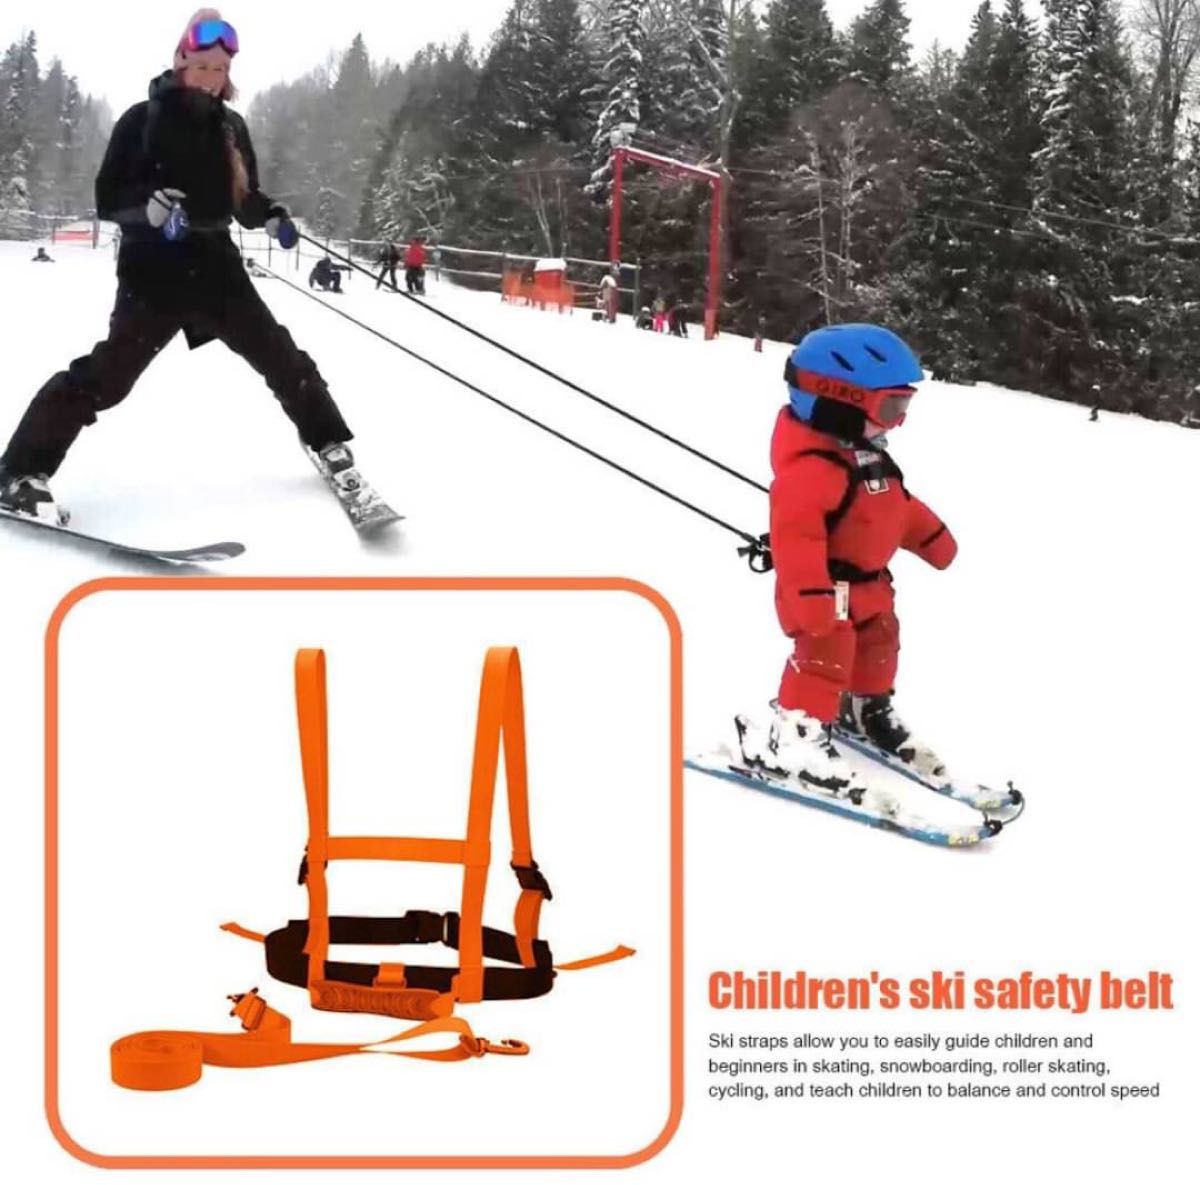 スキー ハーネス スノボー キッズ 子供 練習 安全 トレーニング 大人気 補助 2歳から7歳対象 セール 在庫残りわずか